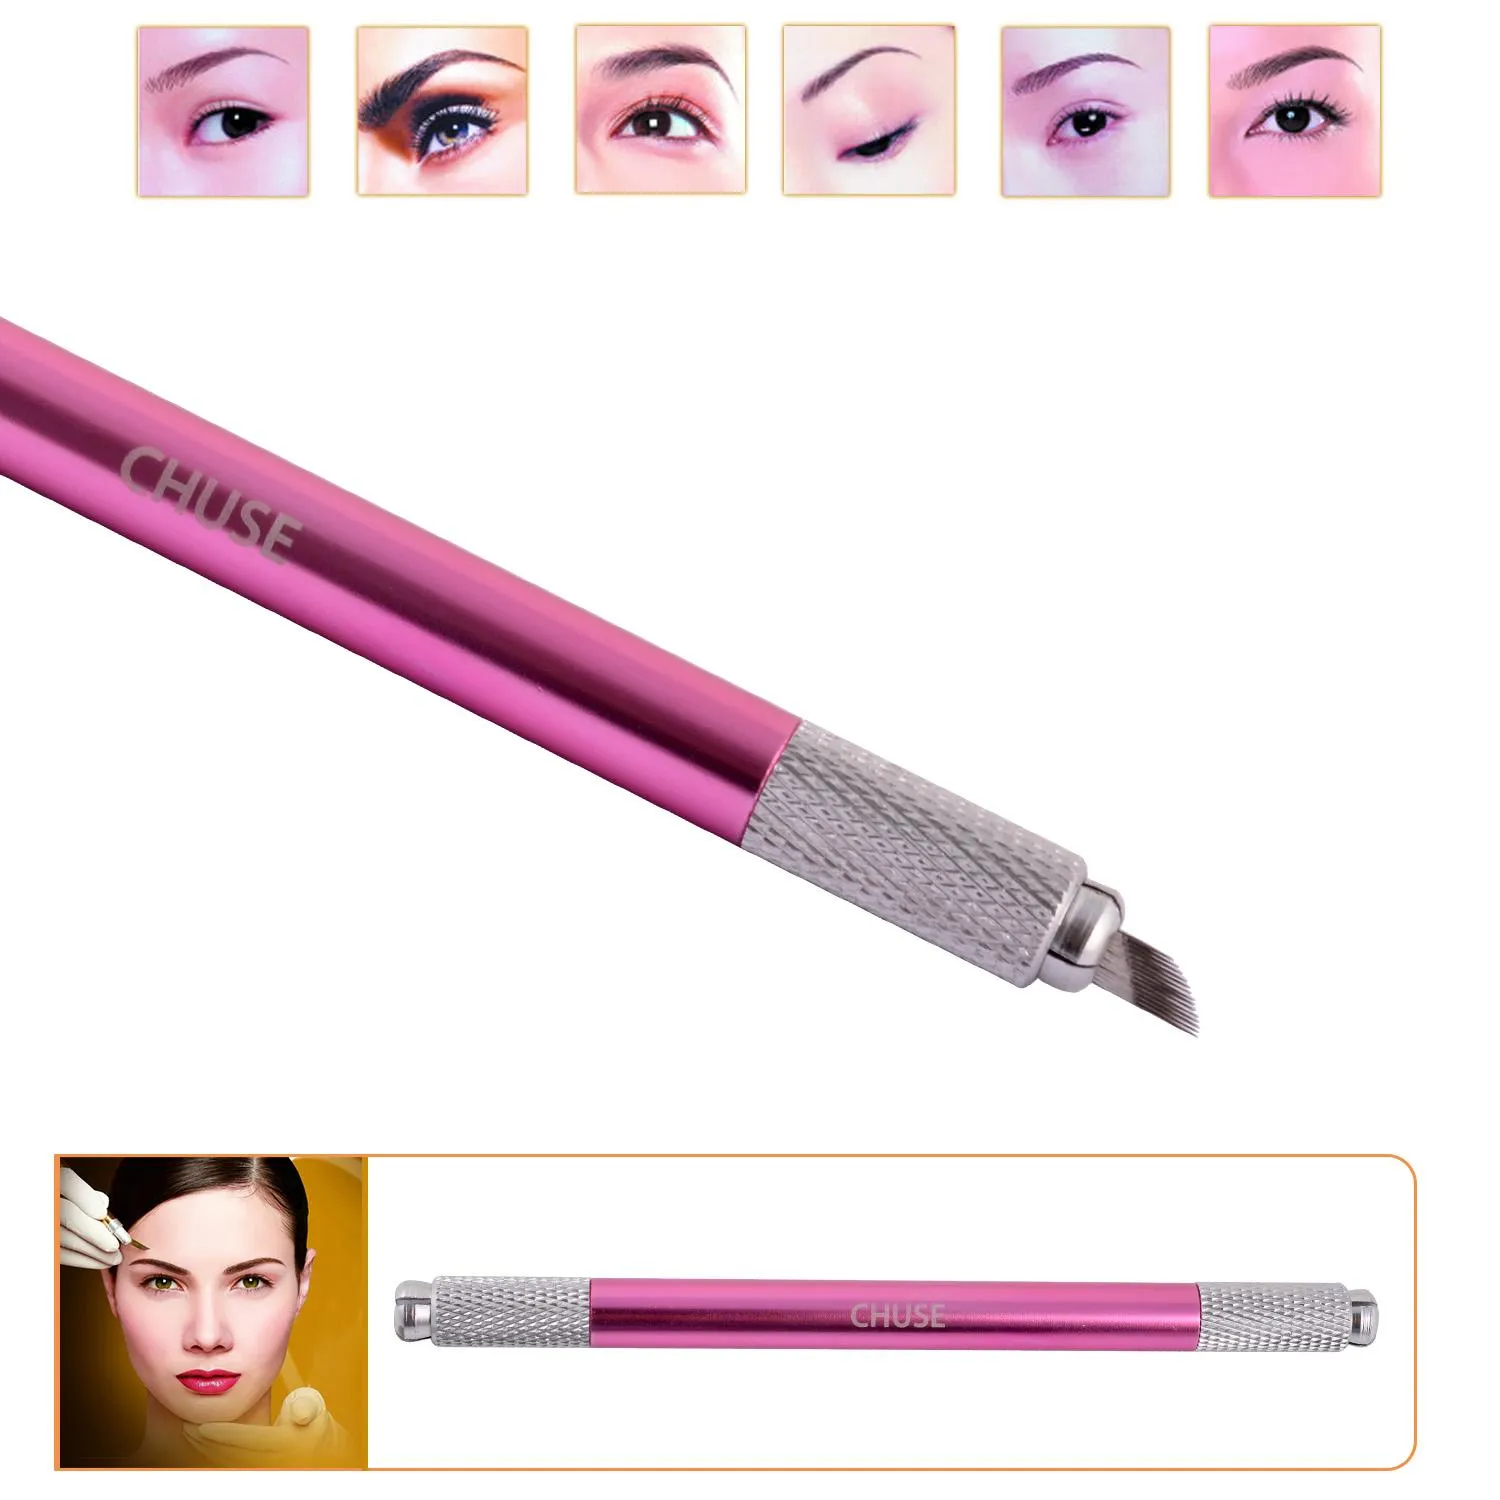 Chuse Manual Cosmetic Pen Pink Tattoo Eyebrow Machines för permanent makeup Båda huvudet tillgängliga